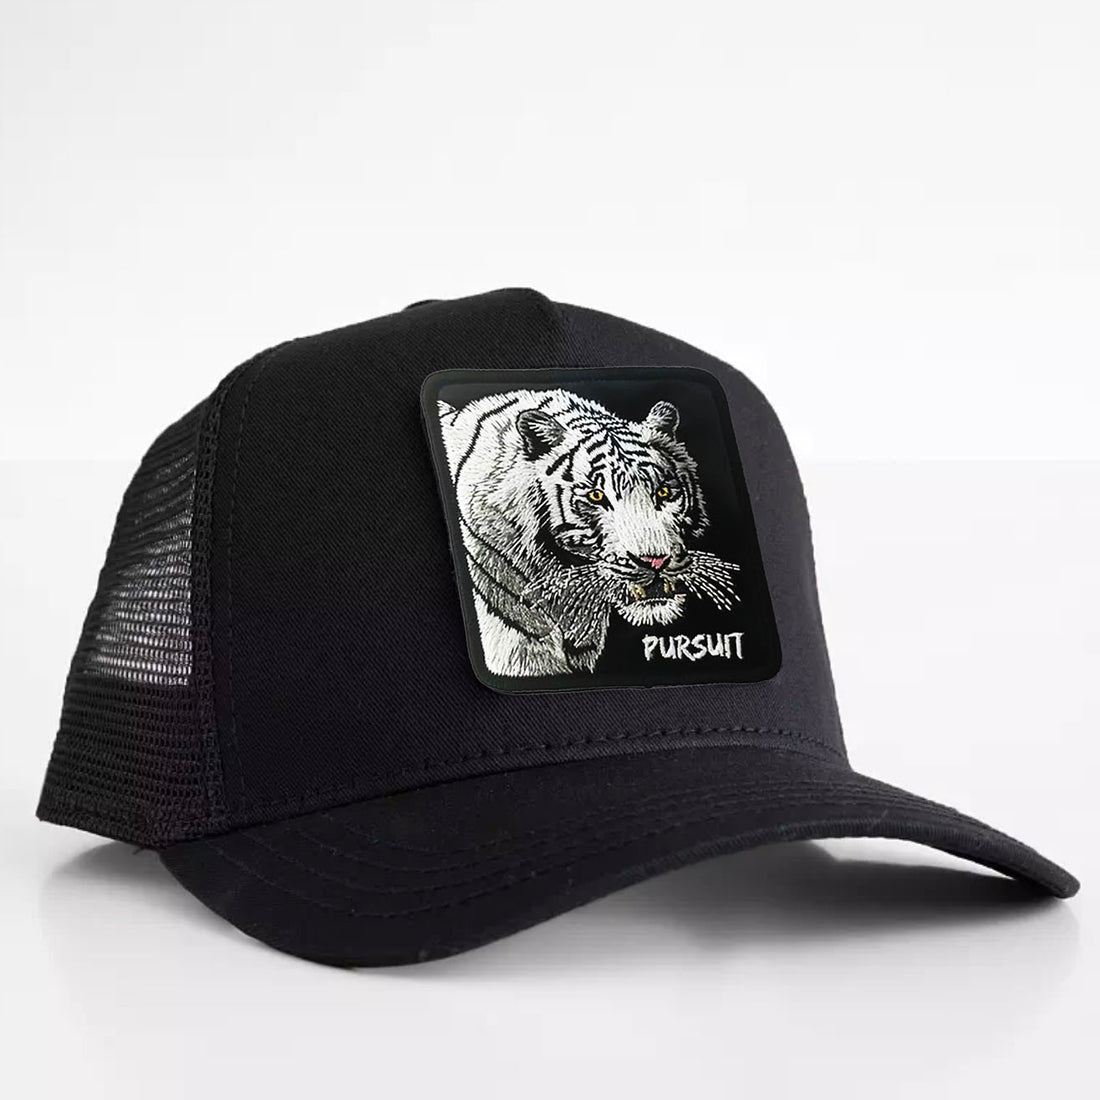 White Tiger - "Pursuit" Trucker Hat